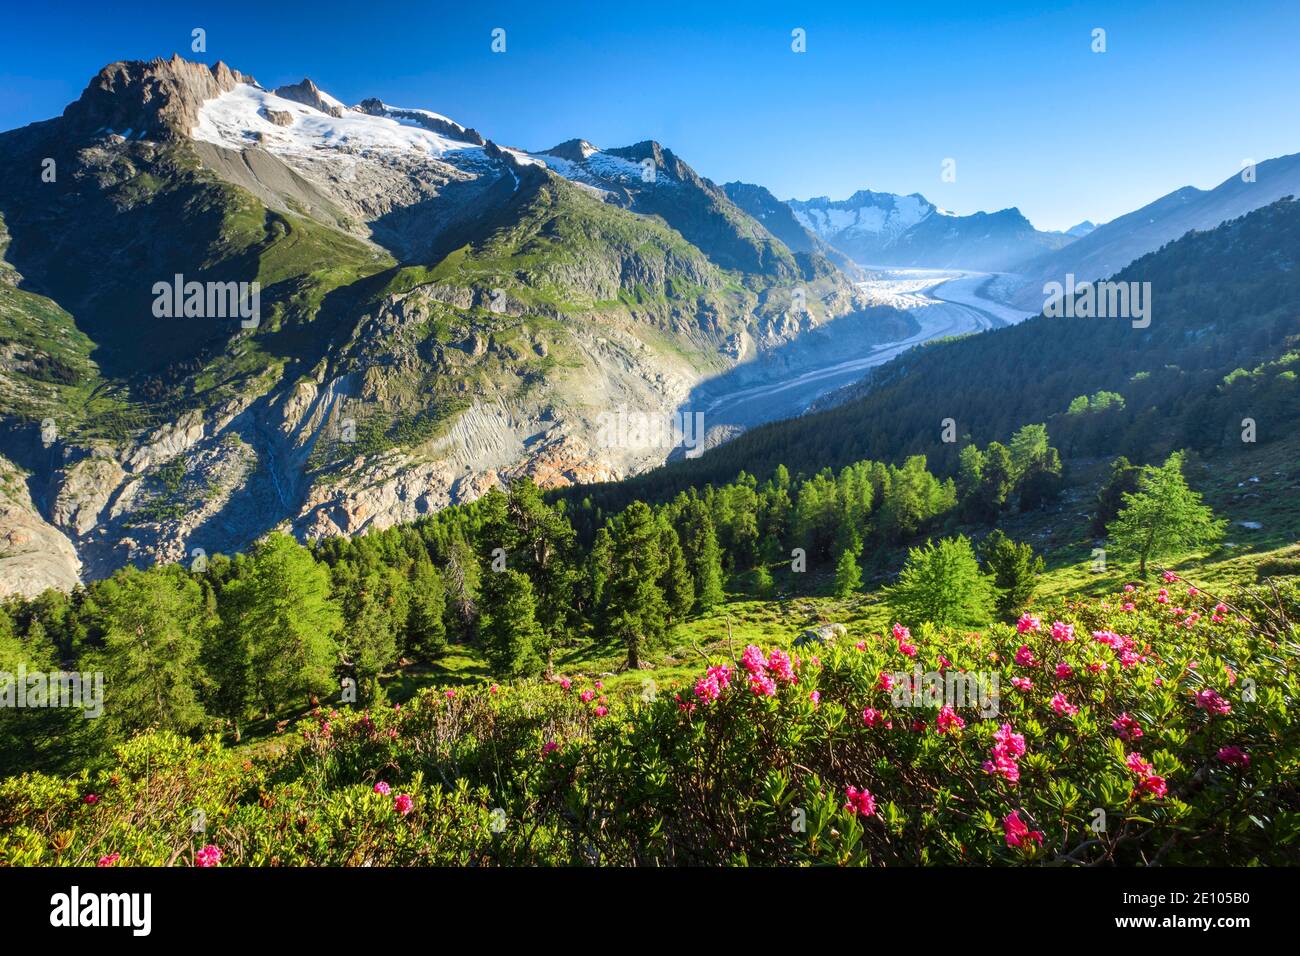 Fusshörner, Wannenhörner and Aletsch Glacier, Switzerland, Europe Stock Photo